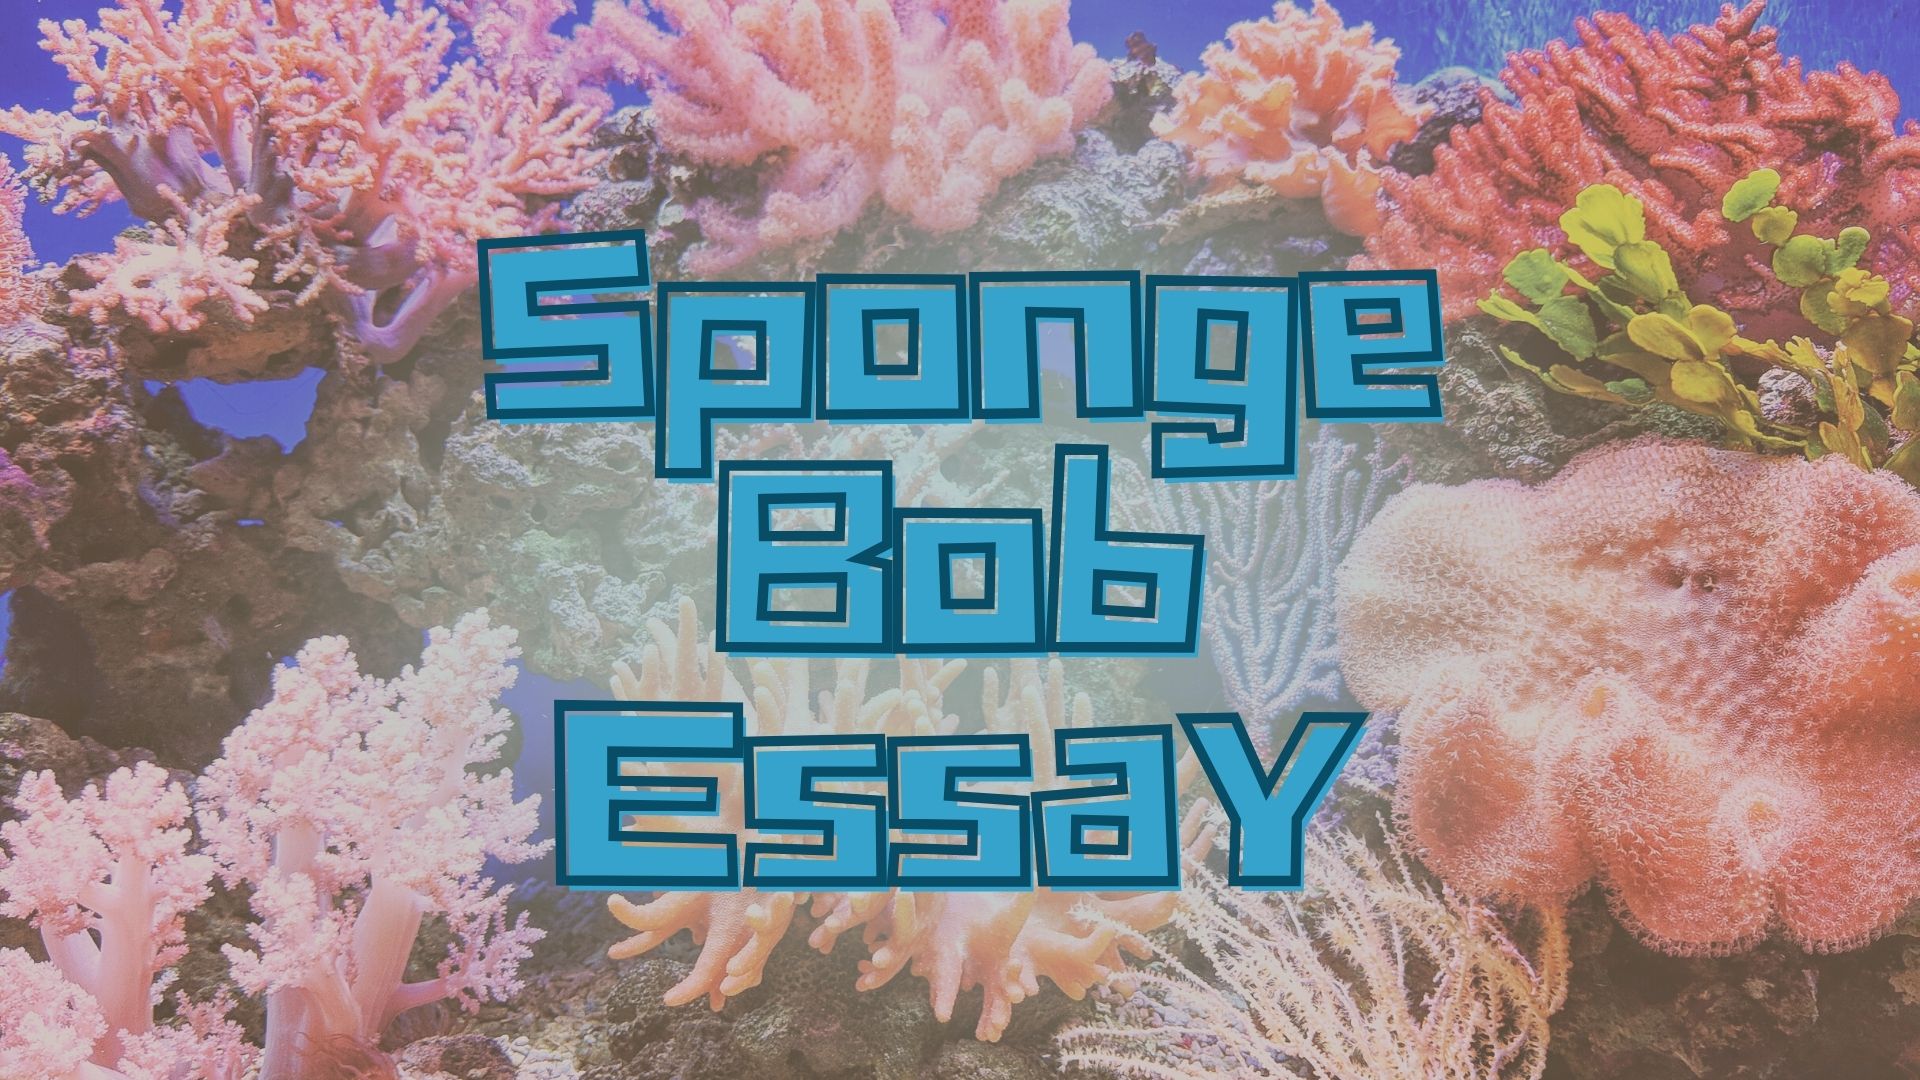 spongebob essay